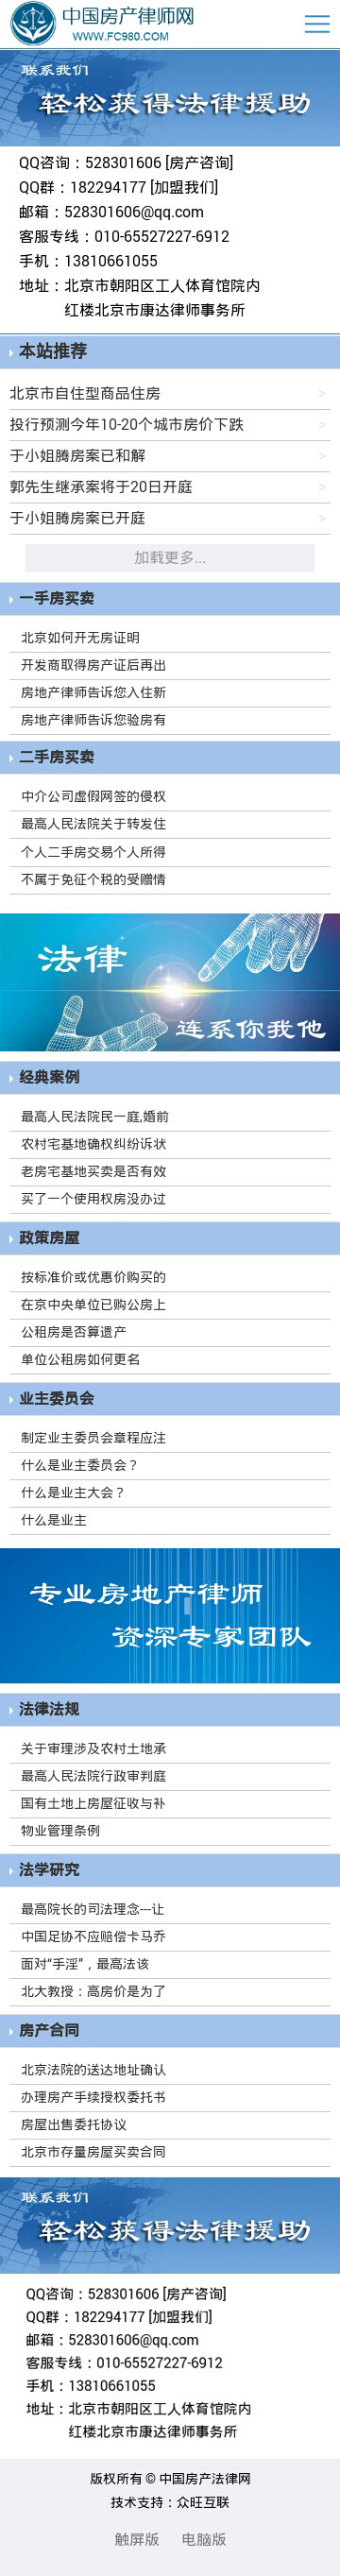 中国房产法律网-北京网站建设-法律网站建设-律师网站建设-律师事务所做网站